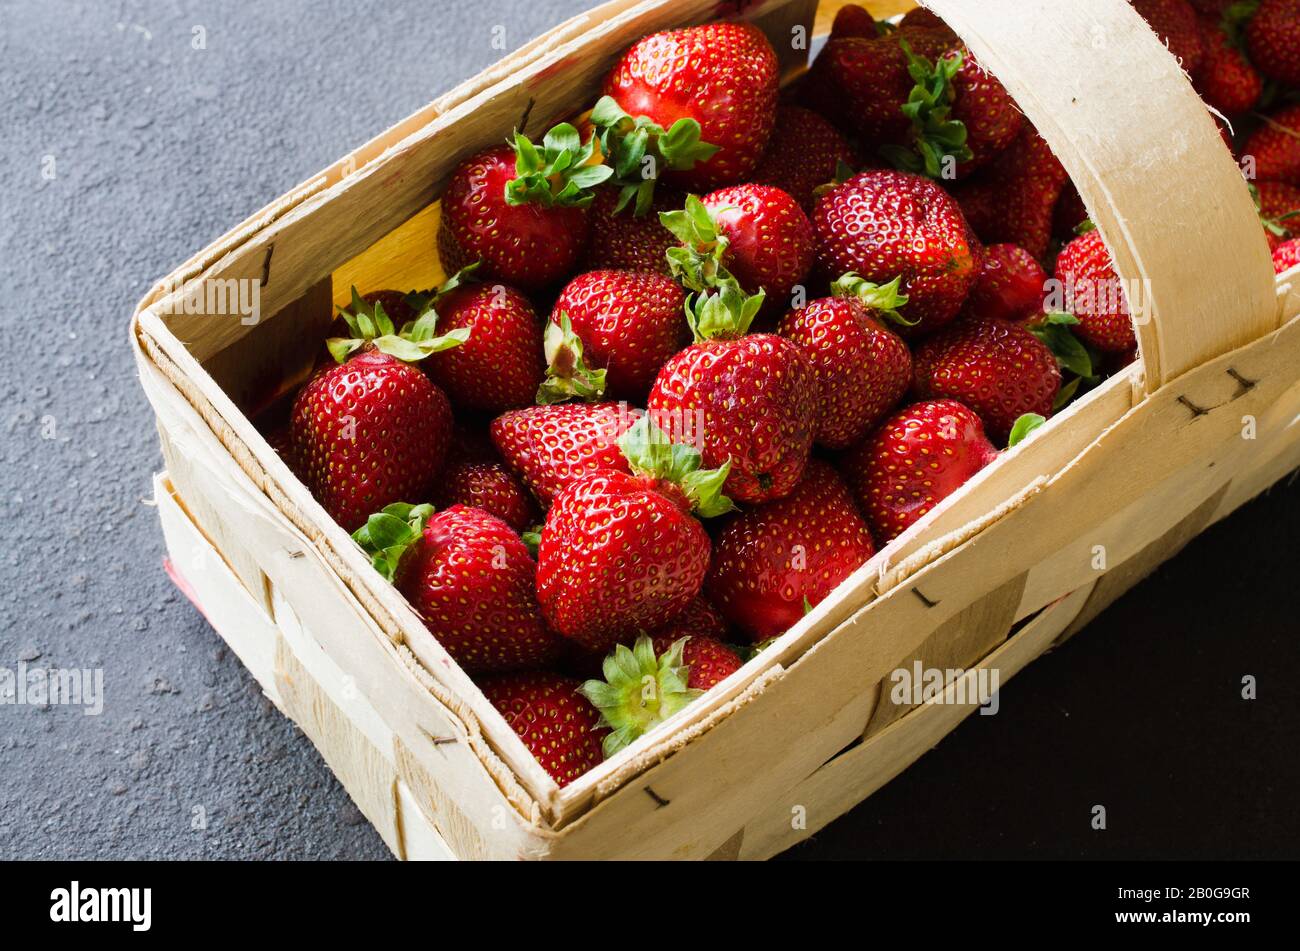 Les fraises mûres fraîches dans un panier en bois sur un fond sombre. Petits fruits juteux organique. Vue d'en haut. Copie de l'espace pour votre texte. Banque D'Images